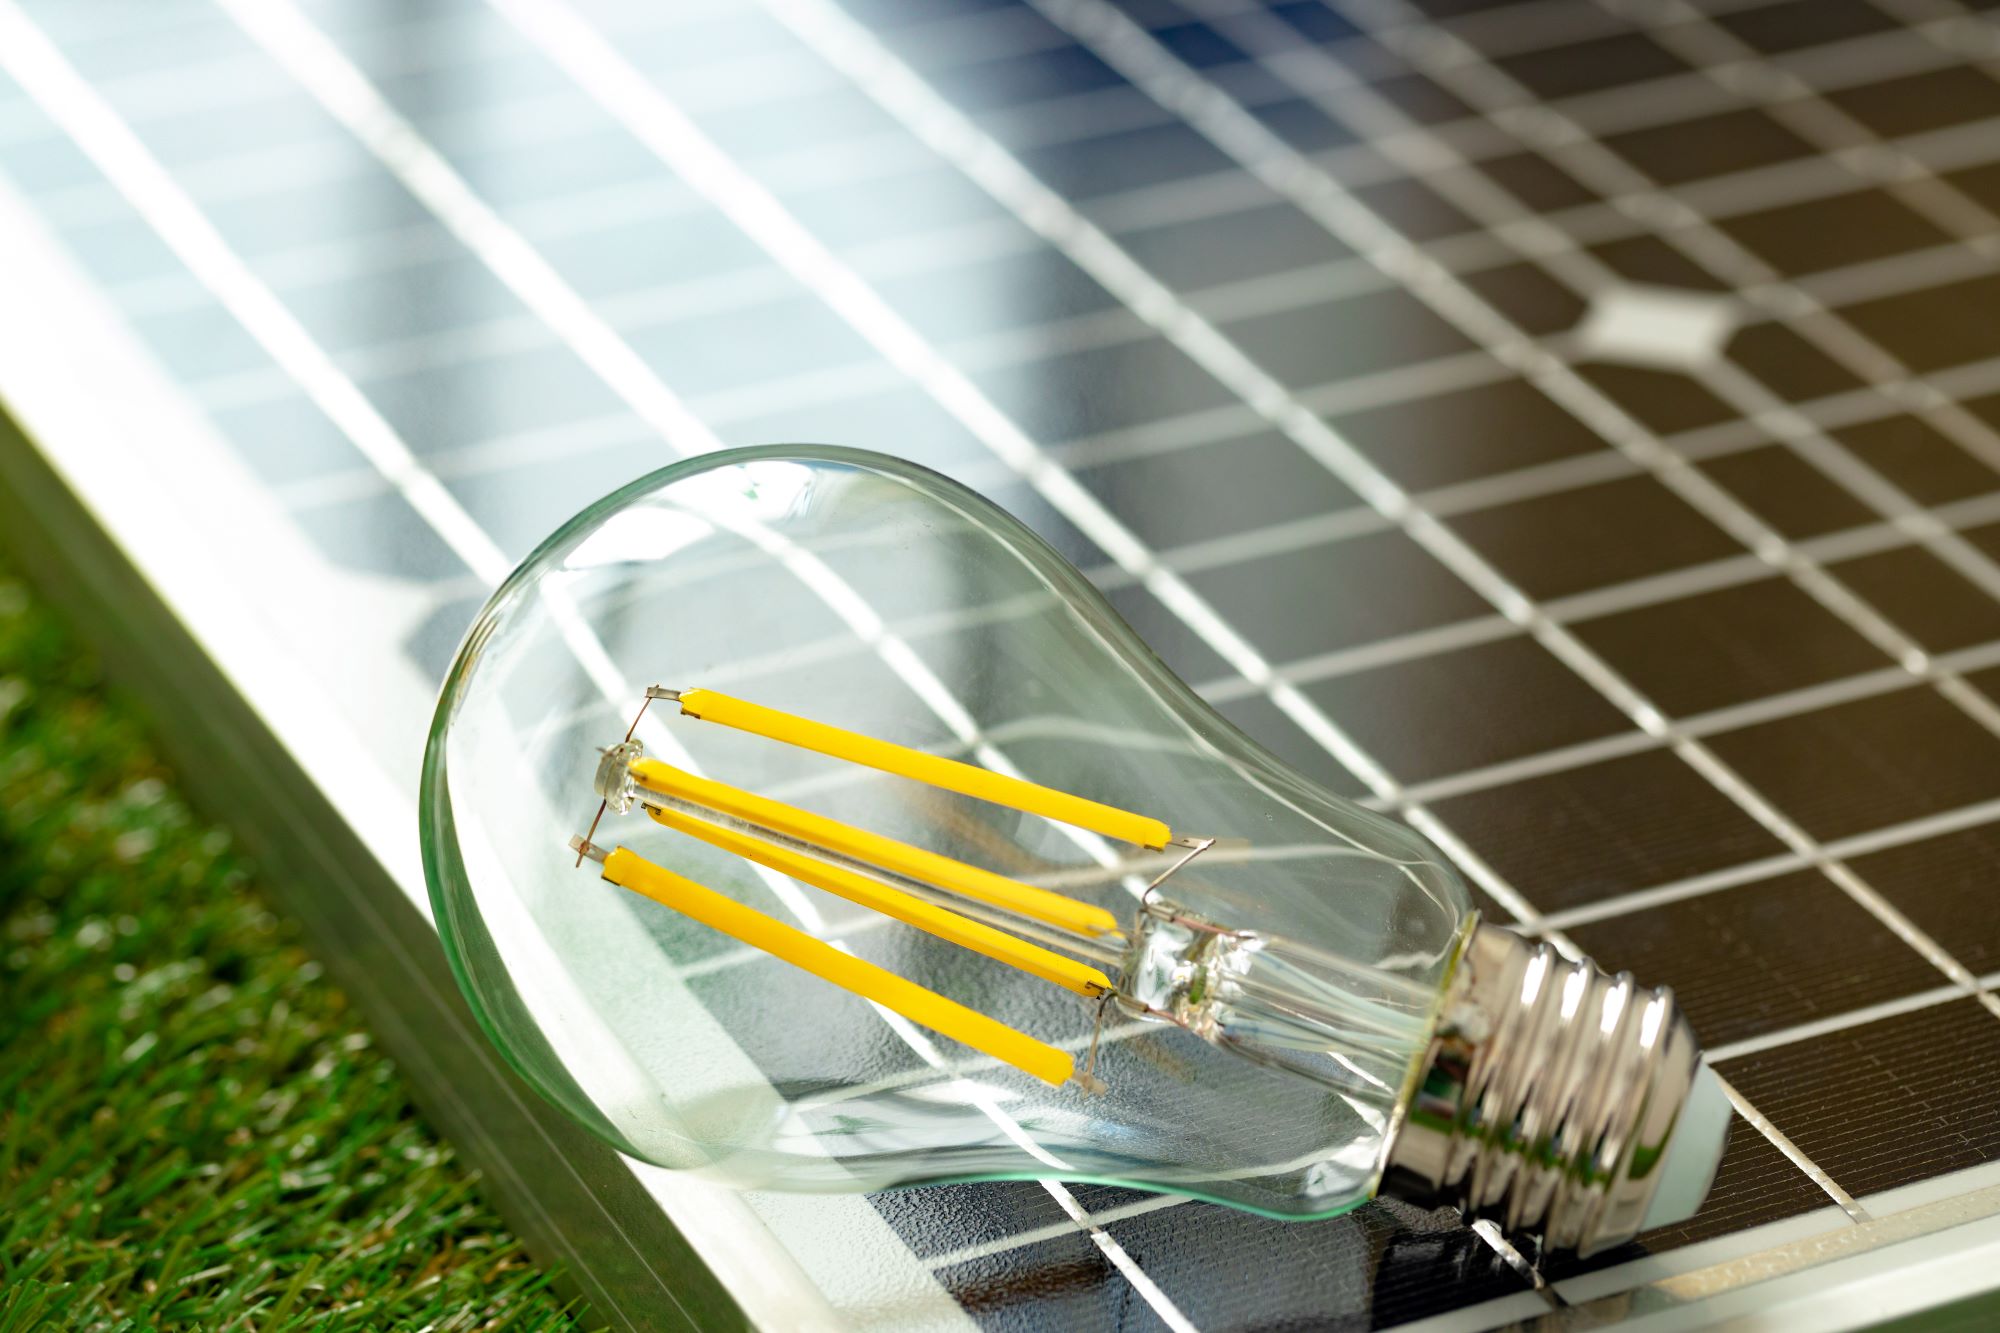 Solar energy panel and light bulb